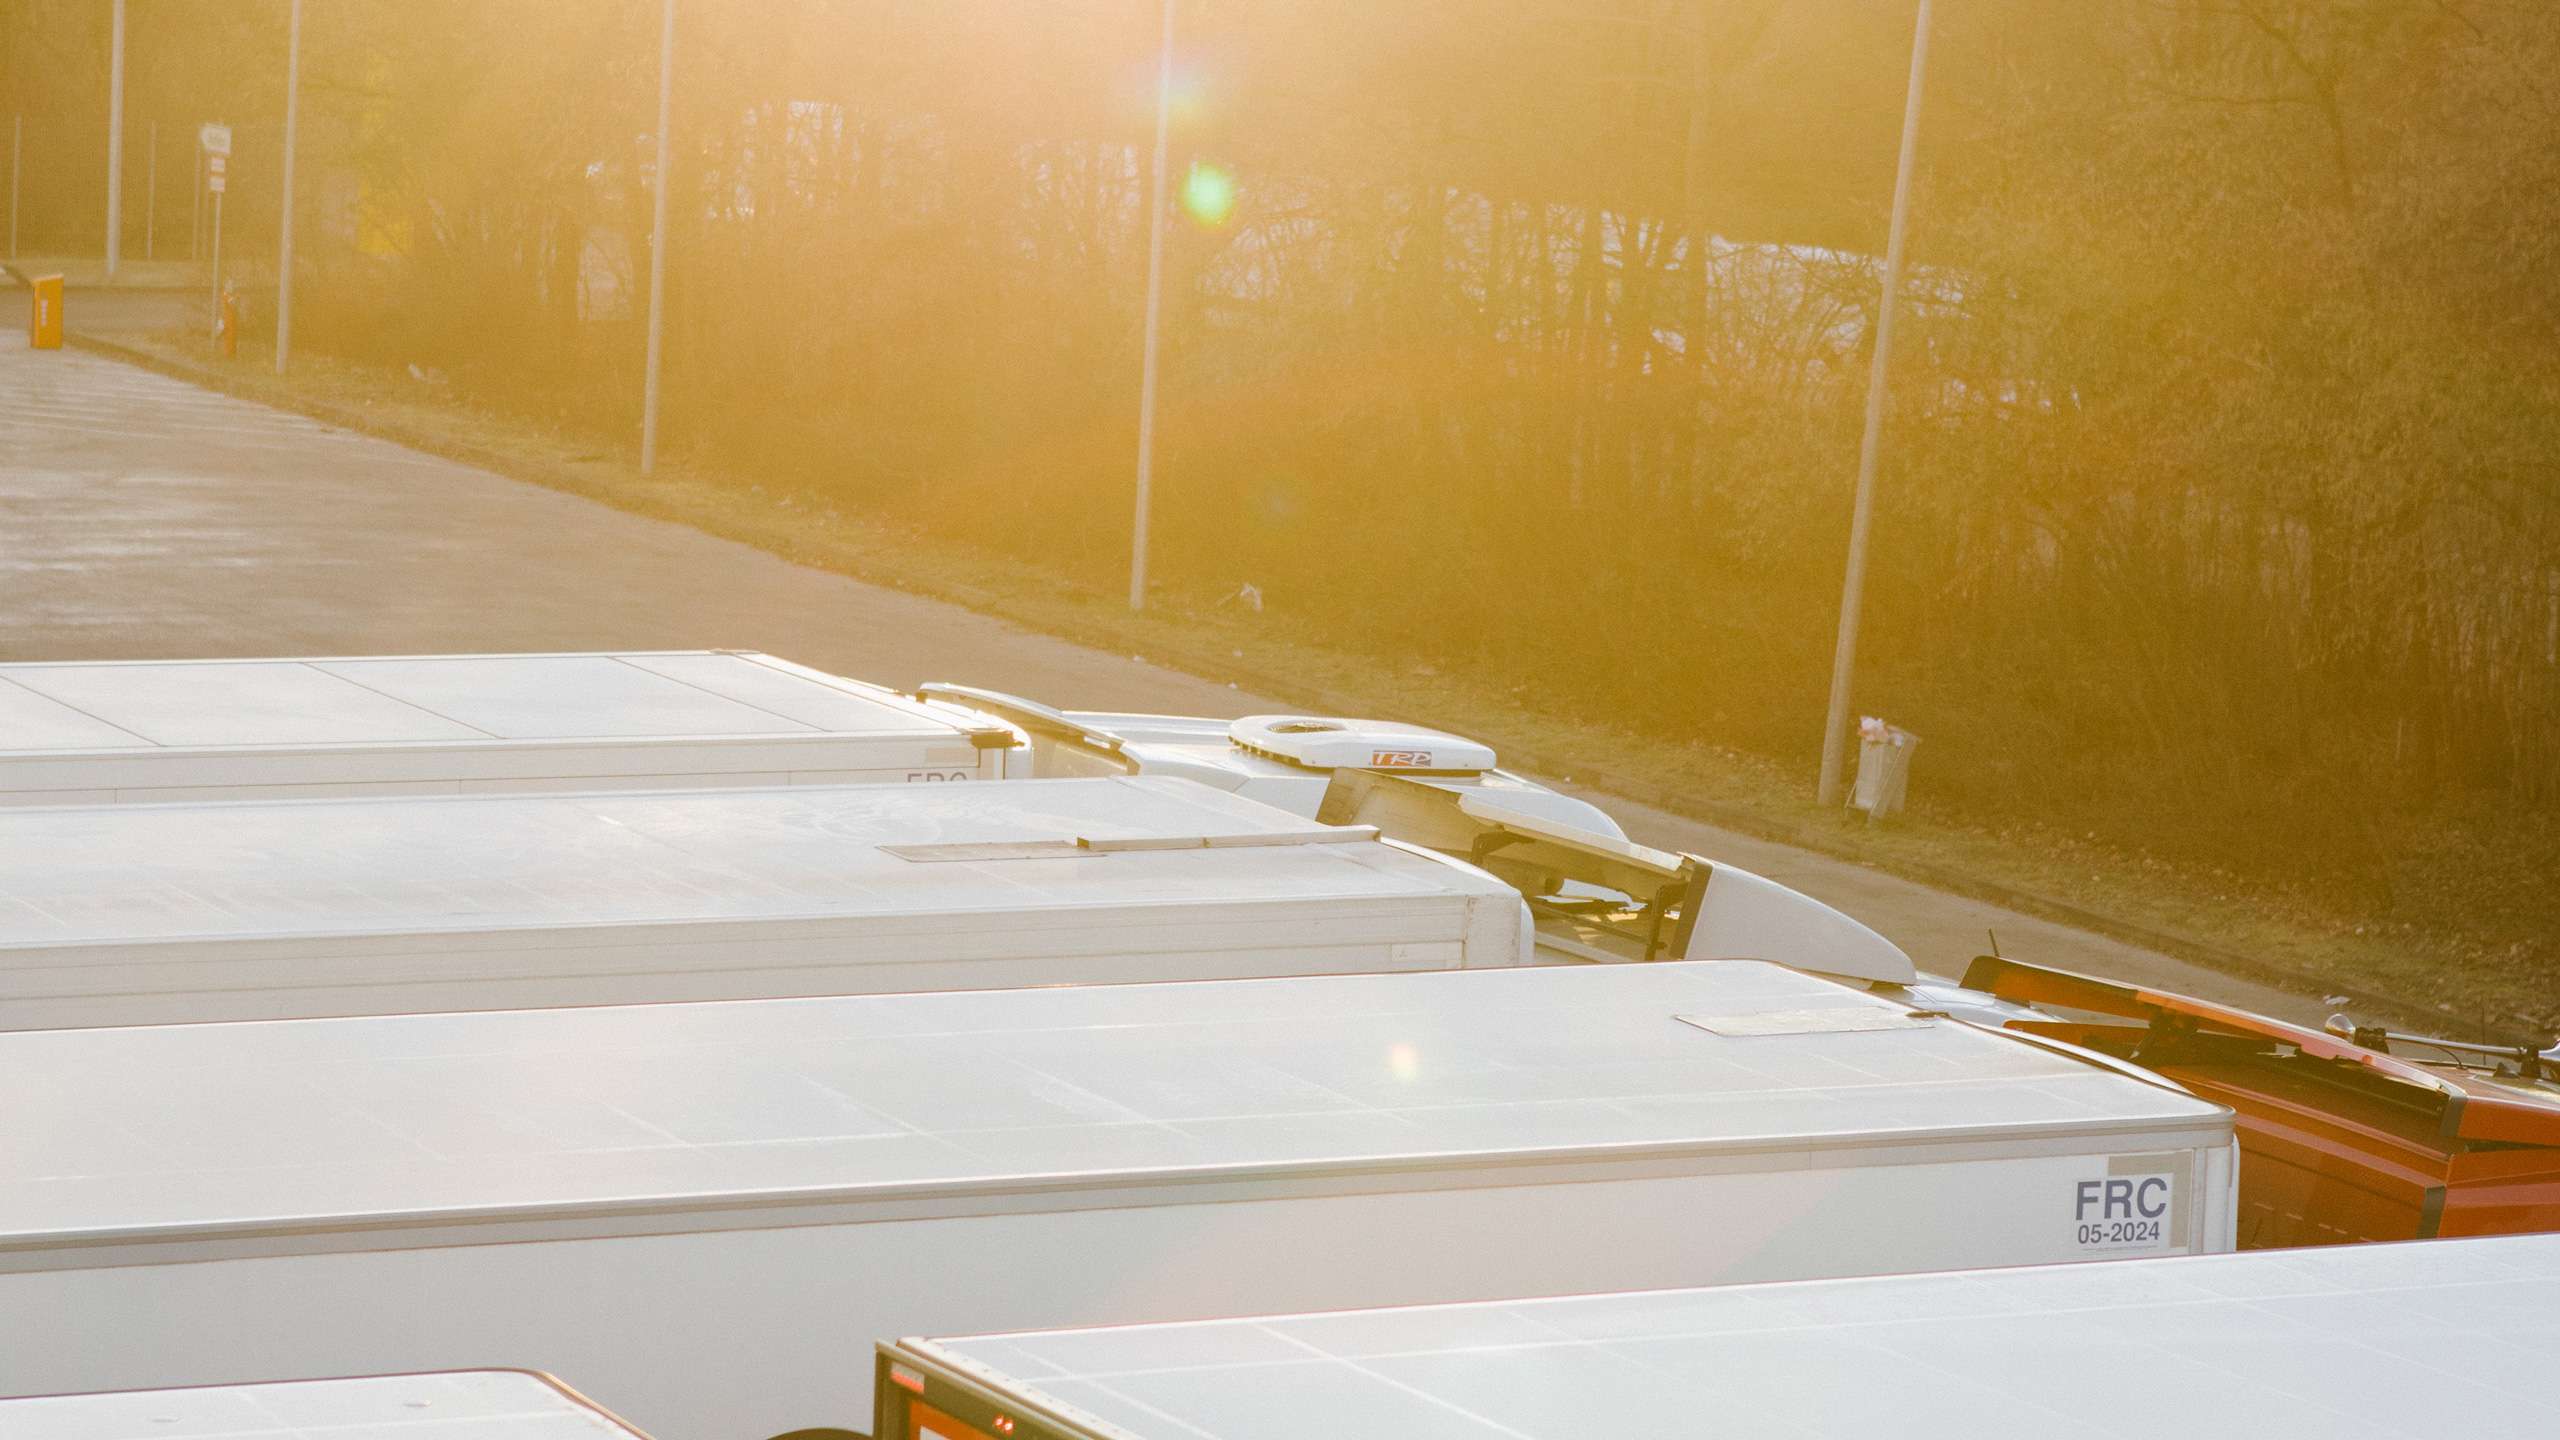 Una fila di camion si staglia alla luce del sole nascente. La luce si riflette sui loro tetti.